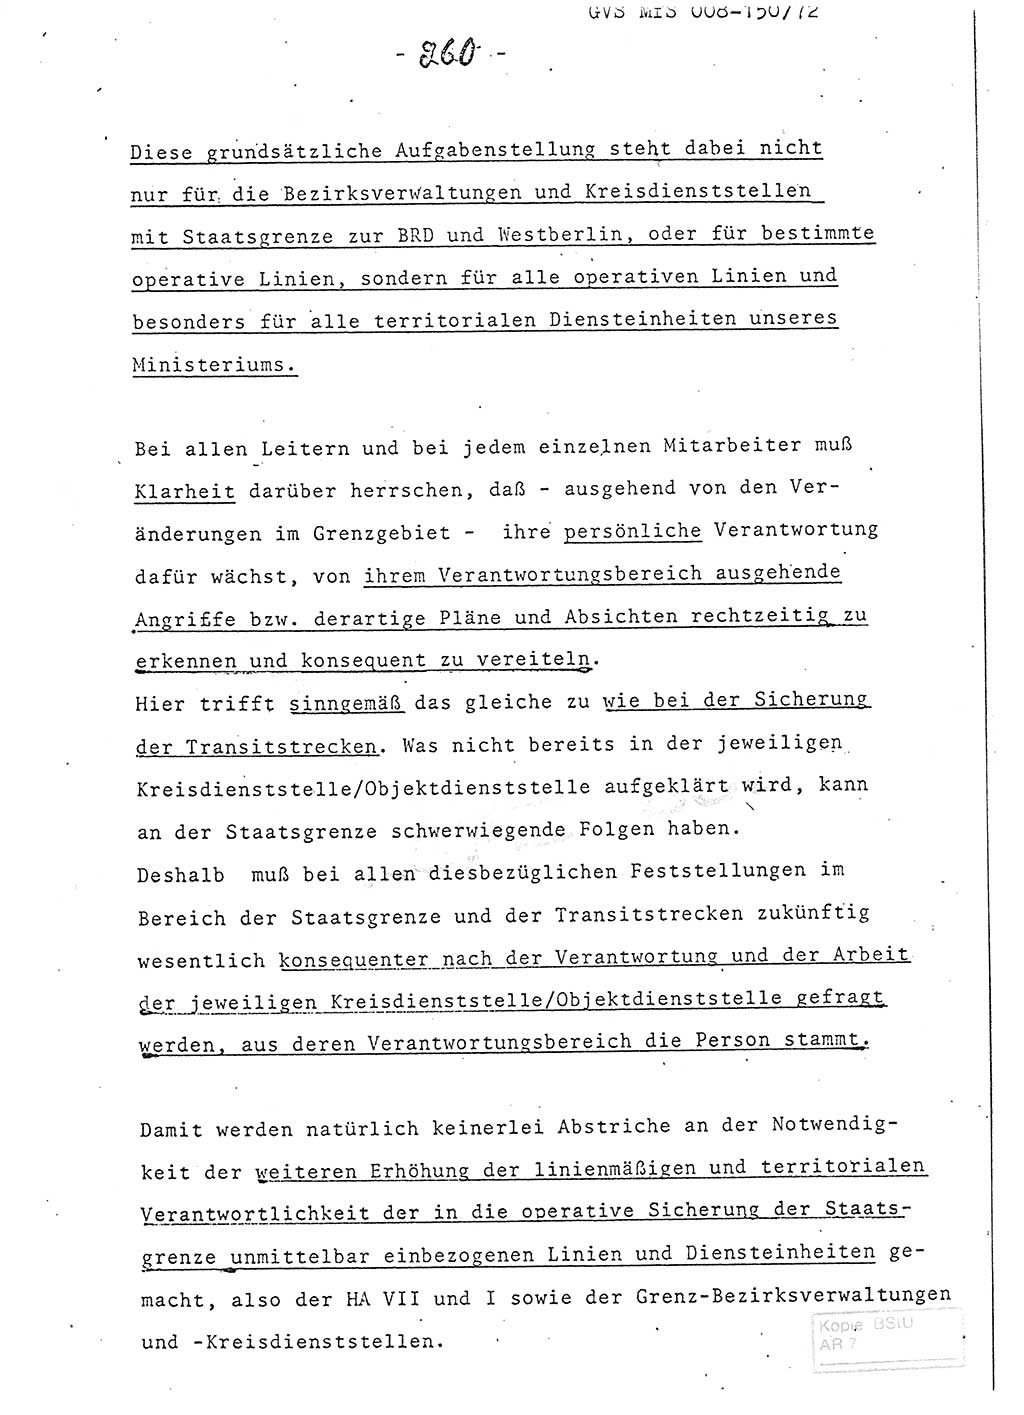 Referat (Entwurf) des Genossen Minister (Generaloberst Erich Mielke) auf der Dienstkonferenz 1972, Ministerium für Staatssicherheit (MfS) [Deutsche Demokratische Republik (DDR)], Der Minister, Geheime Verschlußsache (GVS) 008-150/72, Berlin 25.2.1972, Seite 260 (Ref. Entw. DK MfS DDR Min. GVS 008-150/72 1972, S. 260)